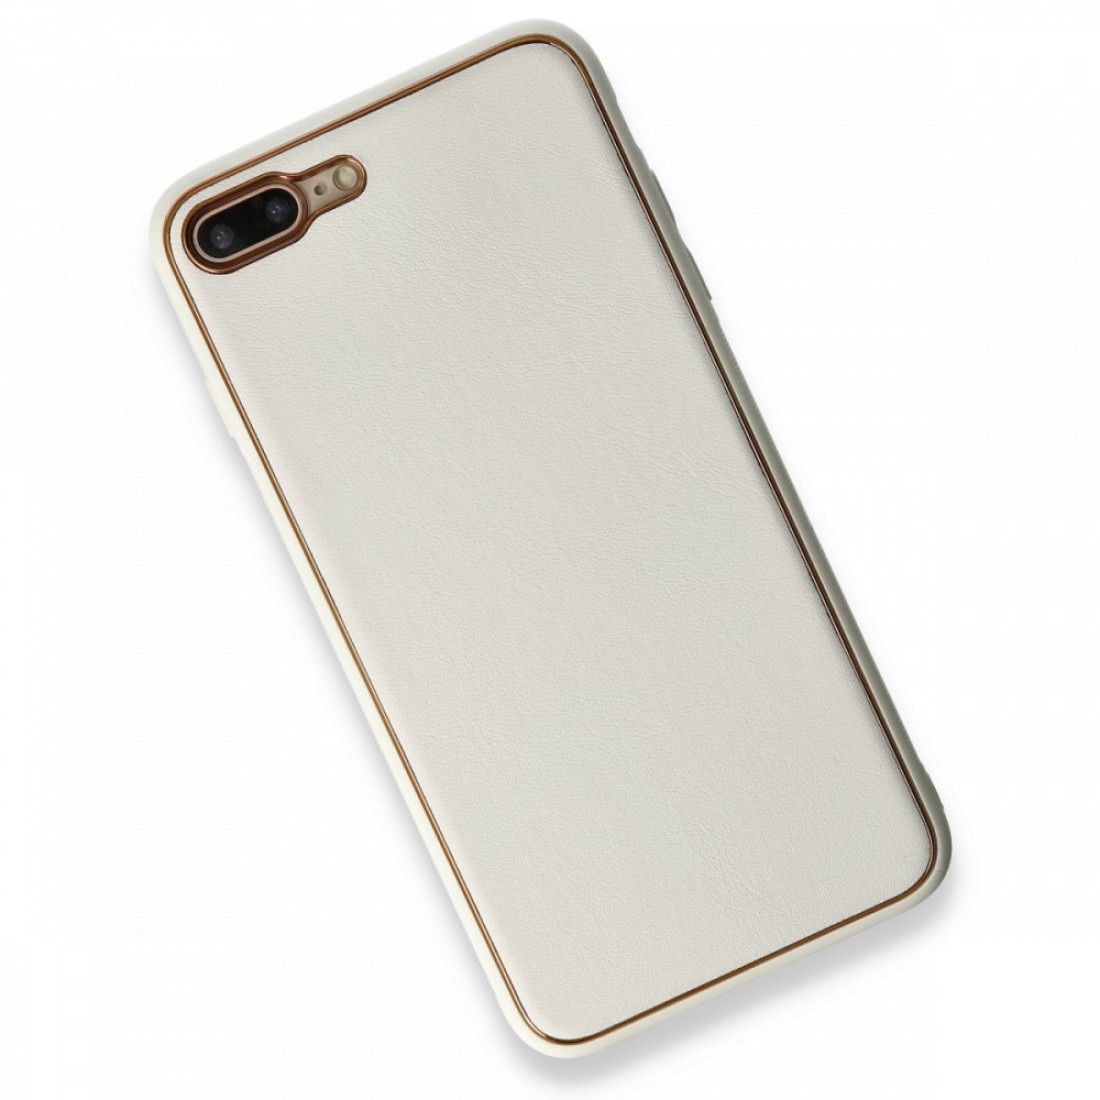 Apple iPhone 7 Plus Kılıf Coco Deri Silikon Kapak - Beyaz